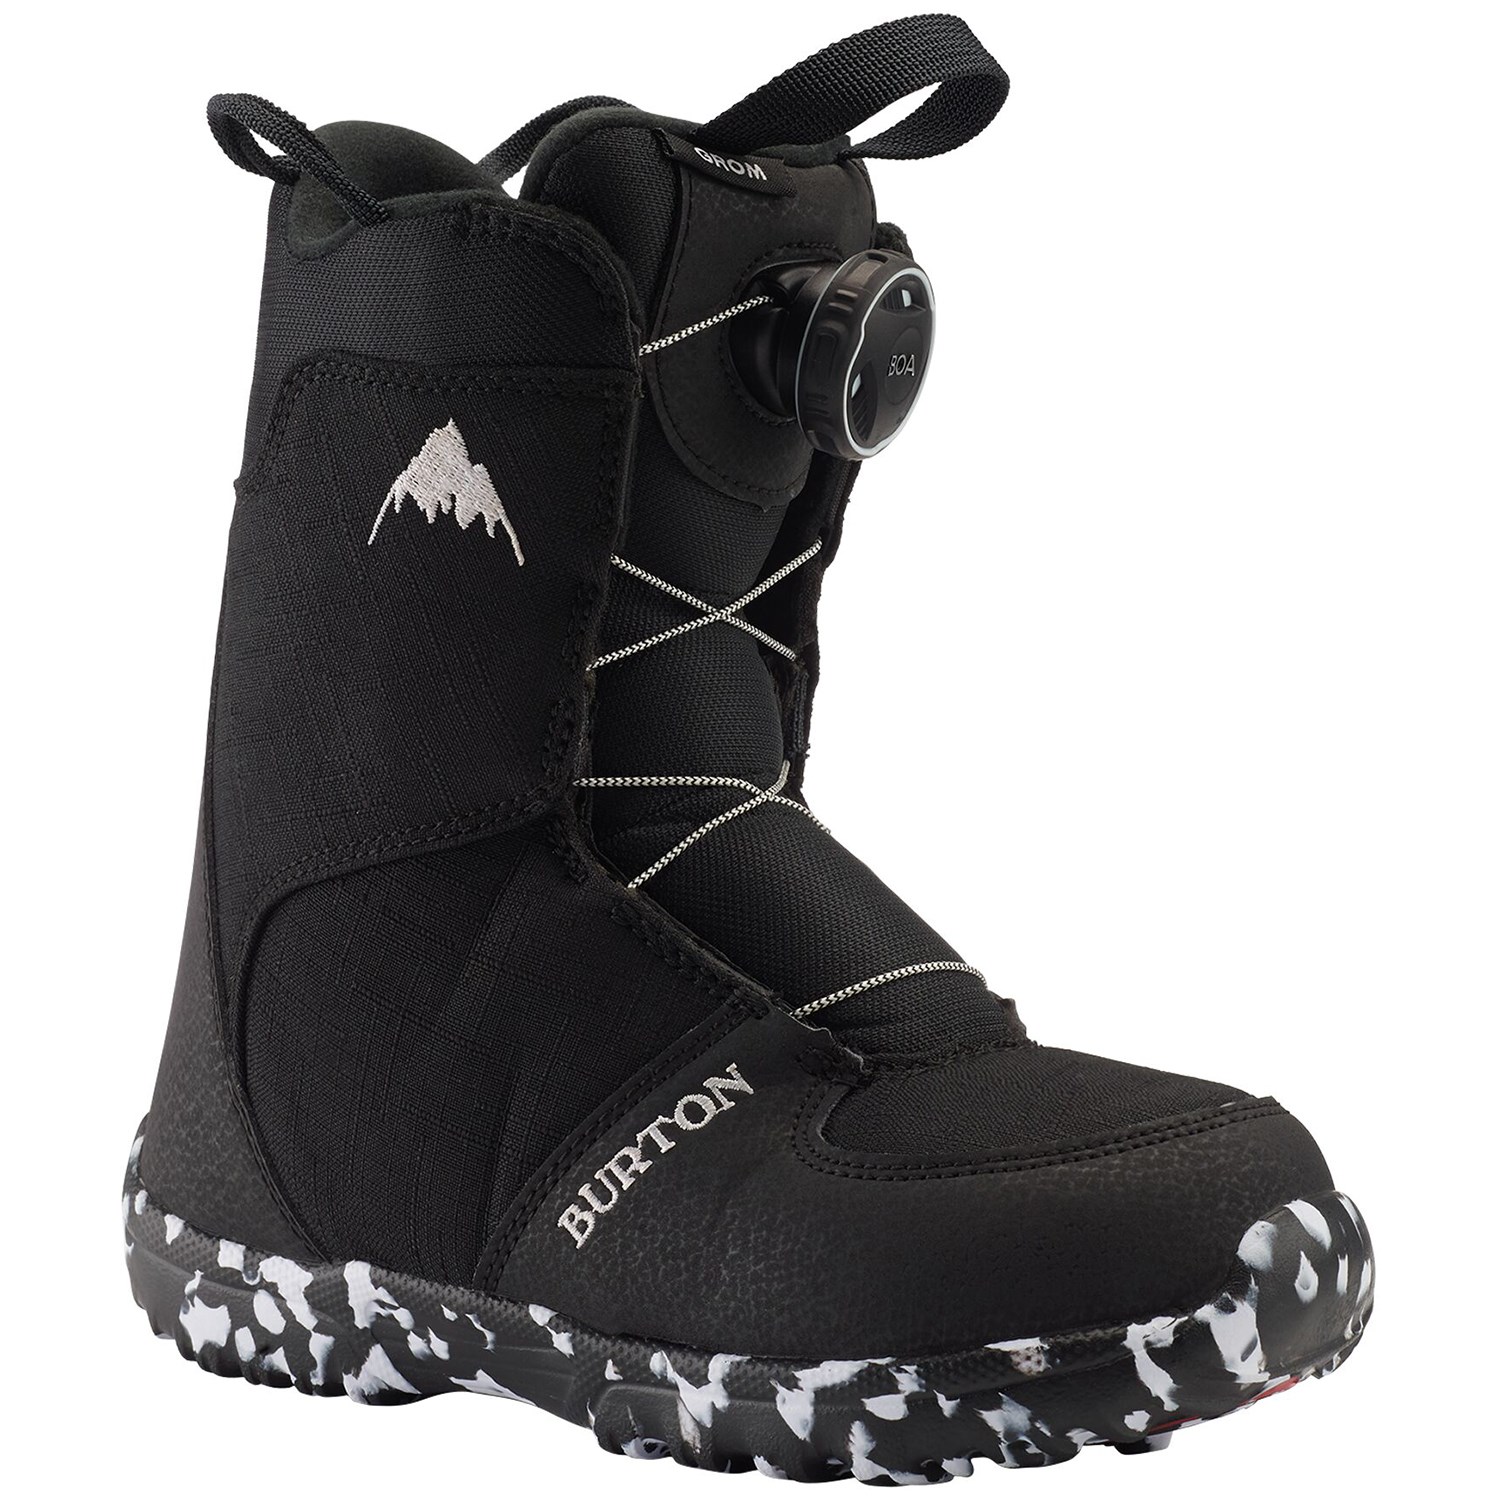 Ботинки Burton Grom Boa для сноуборда, черный ботинки для сноуборда burton grom boa цвет белый фиолетовый длина стельки 21